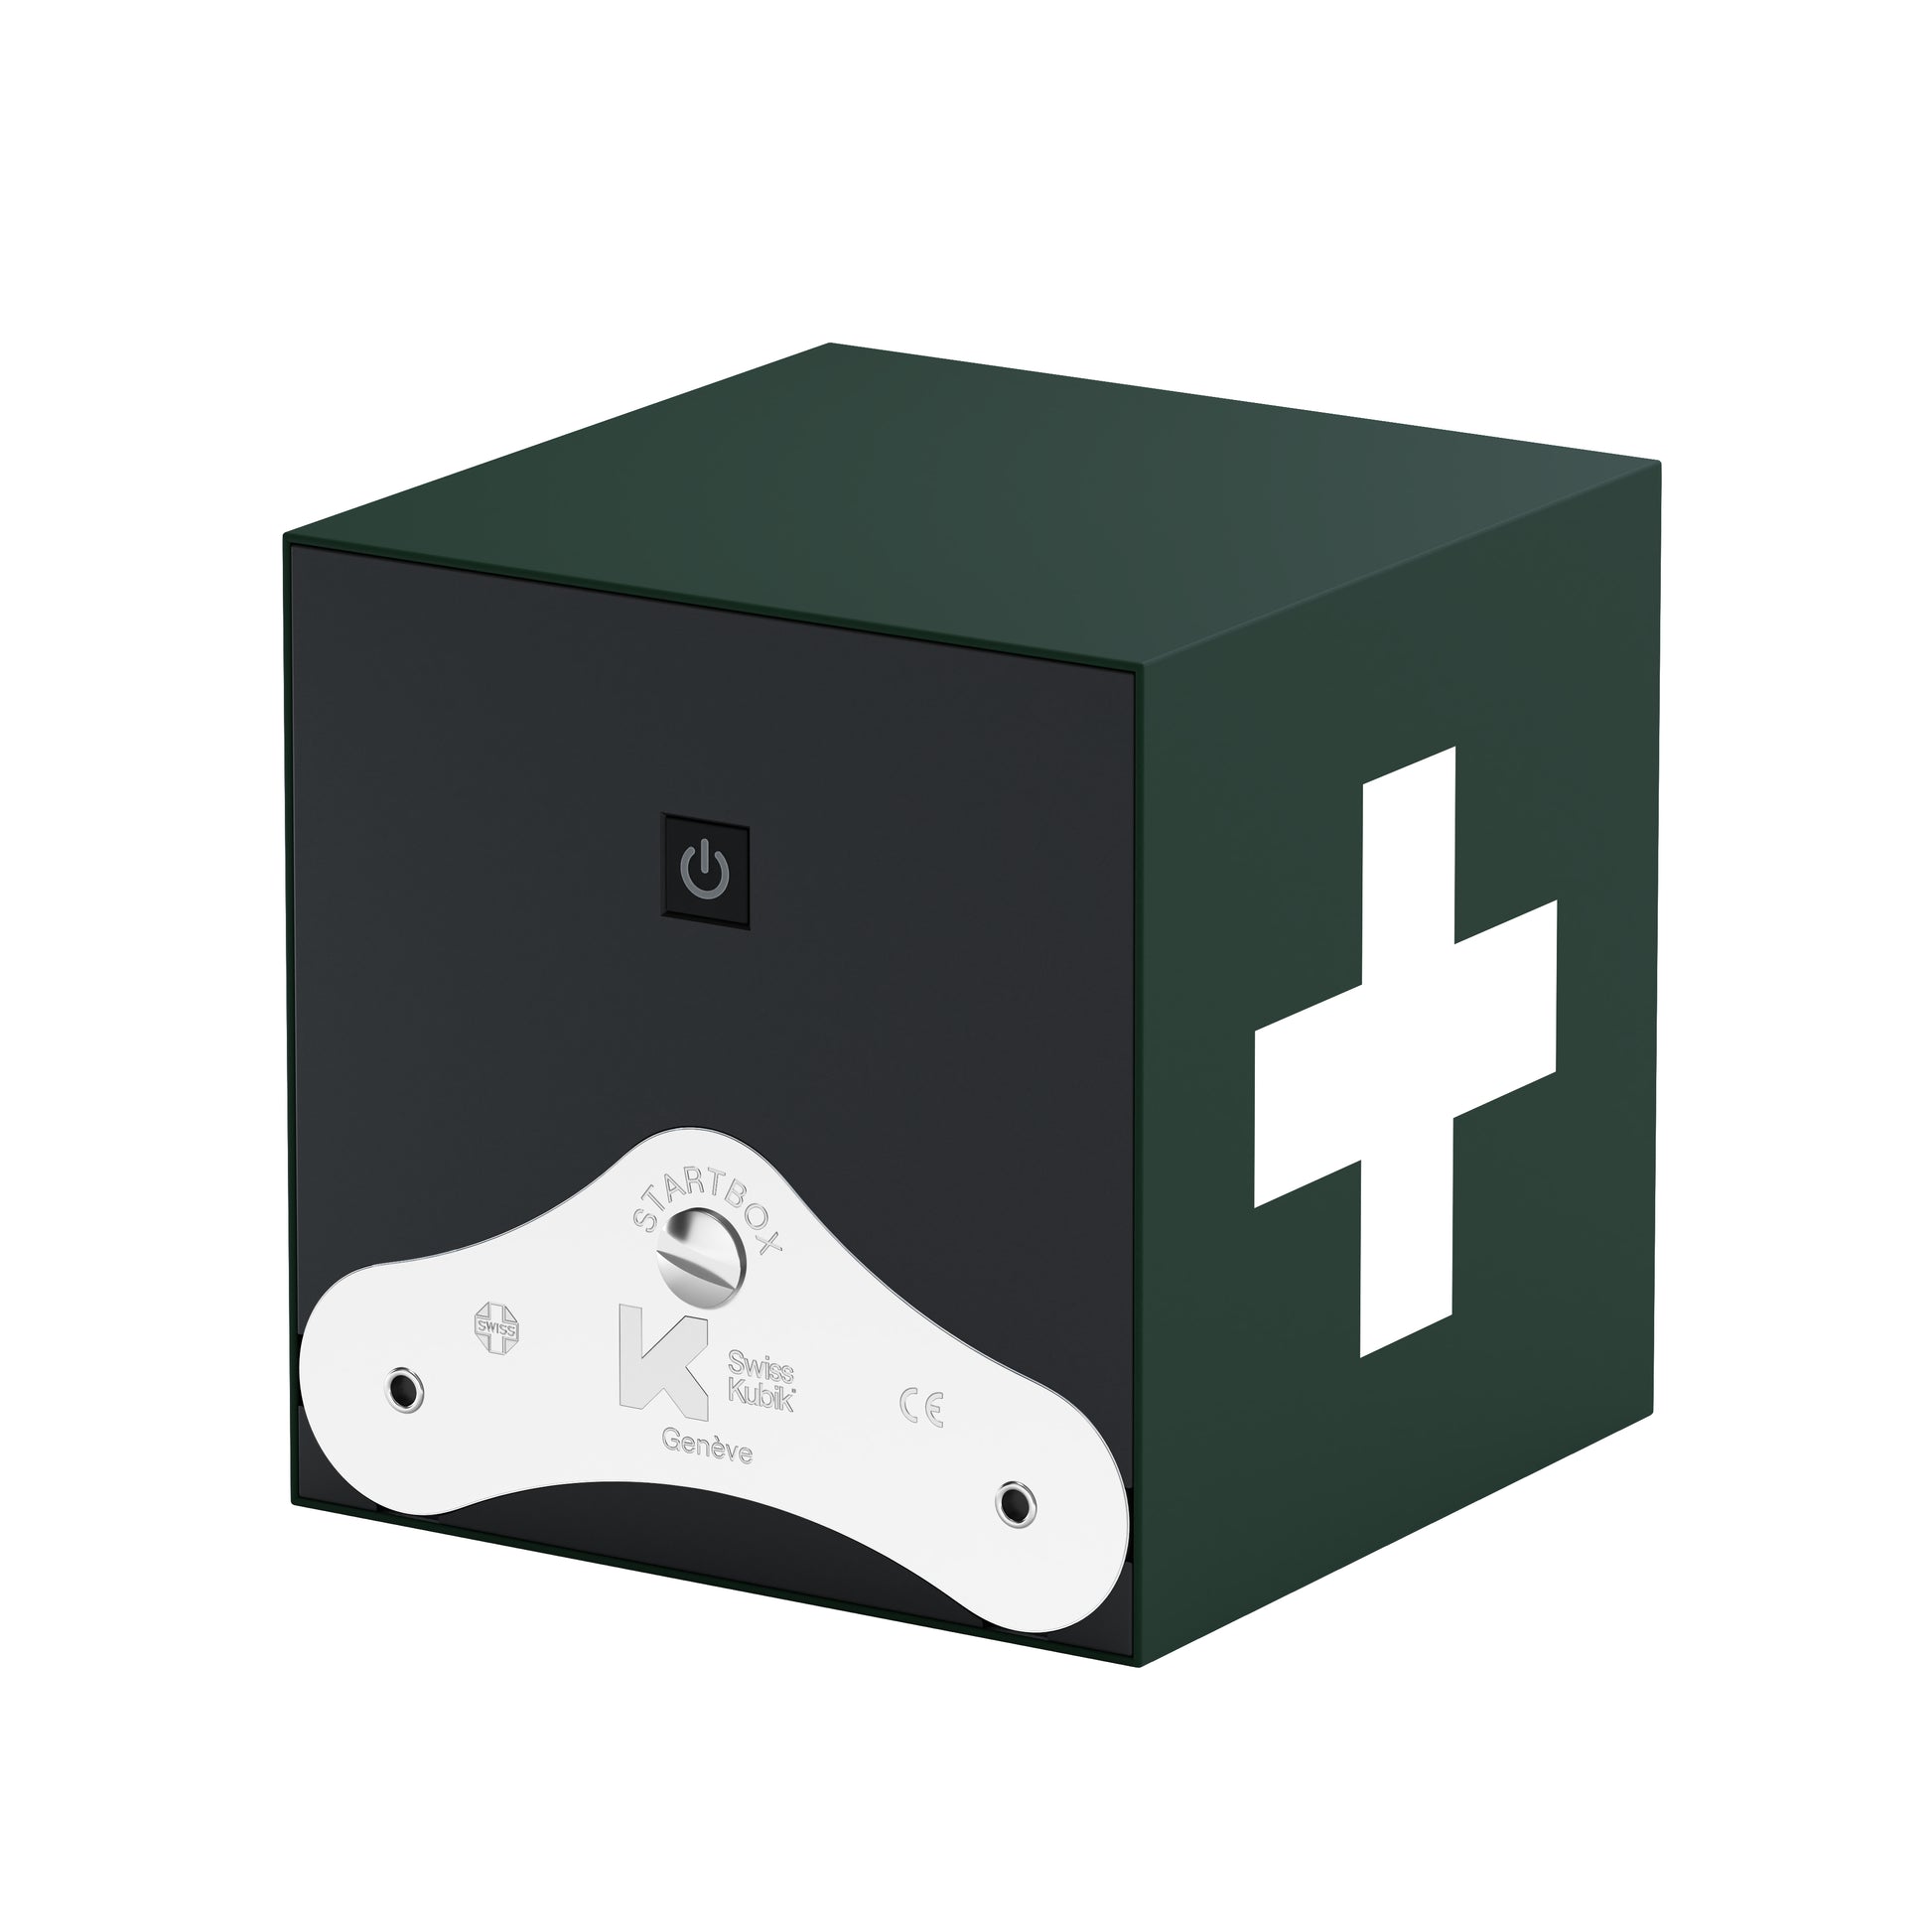 Startbox 1 montre Soft Touch Vert : écrin rotatif pour montre automatique